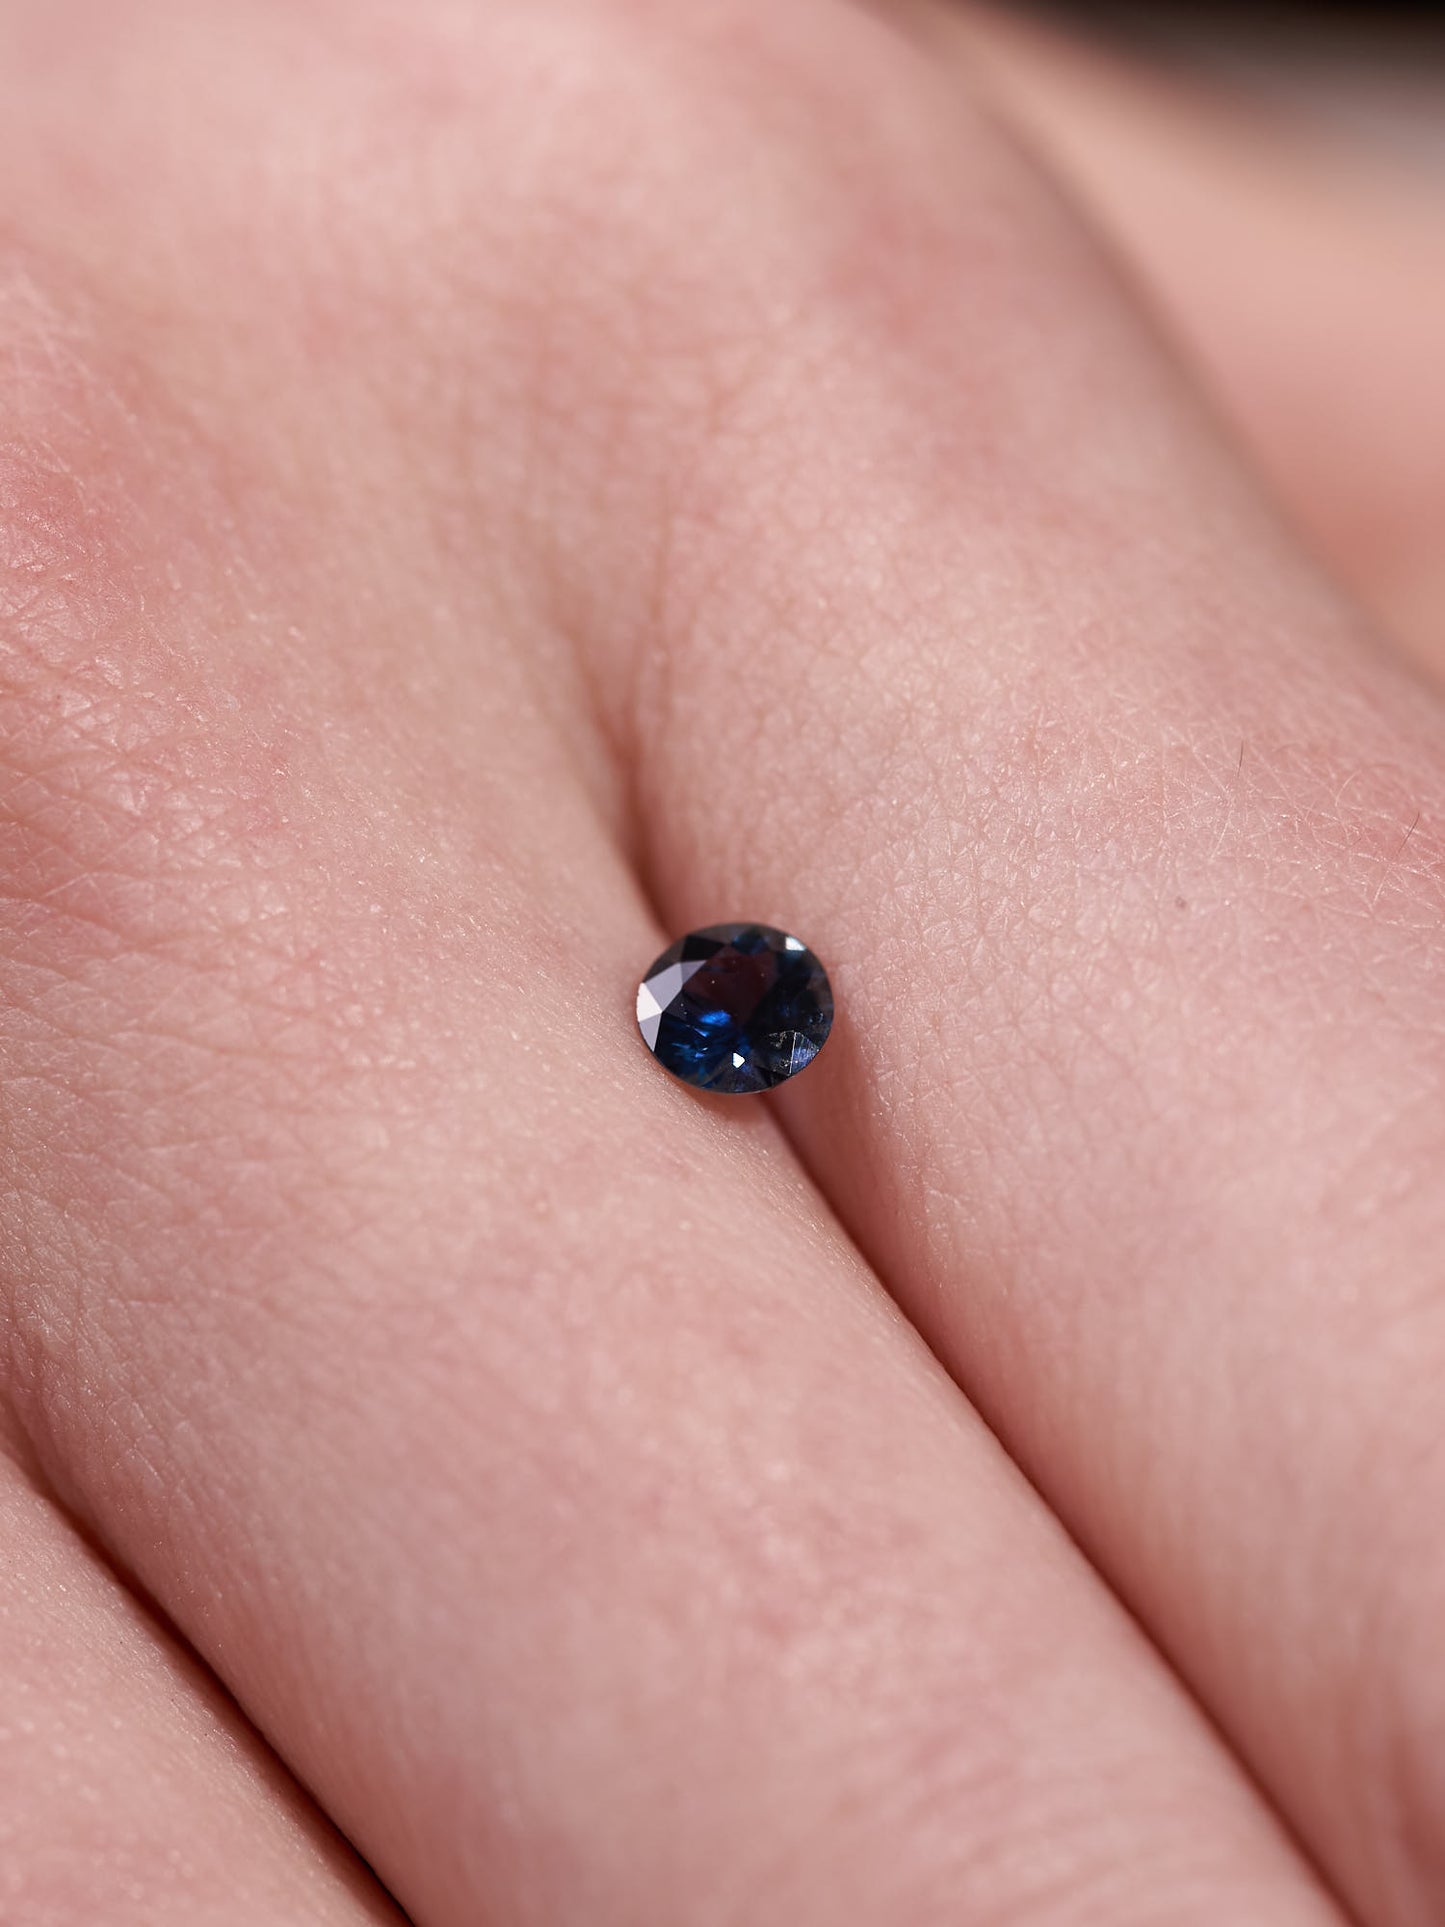 Colbalt Sapphire Gemstone - Brilliant 0.35ct